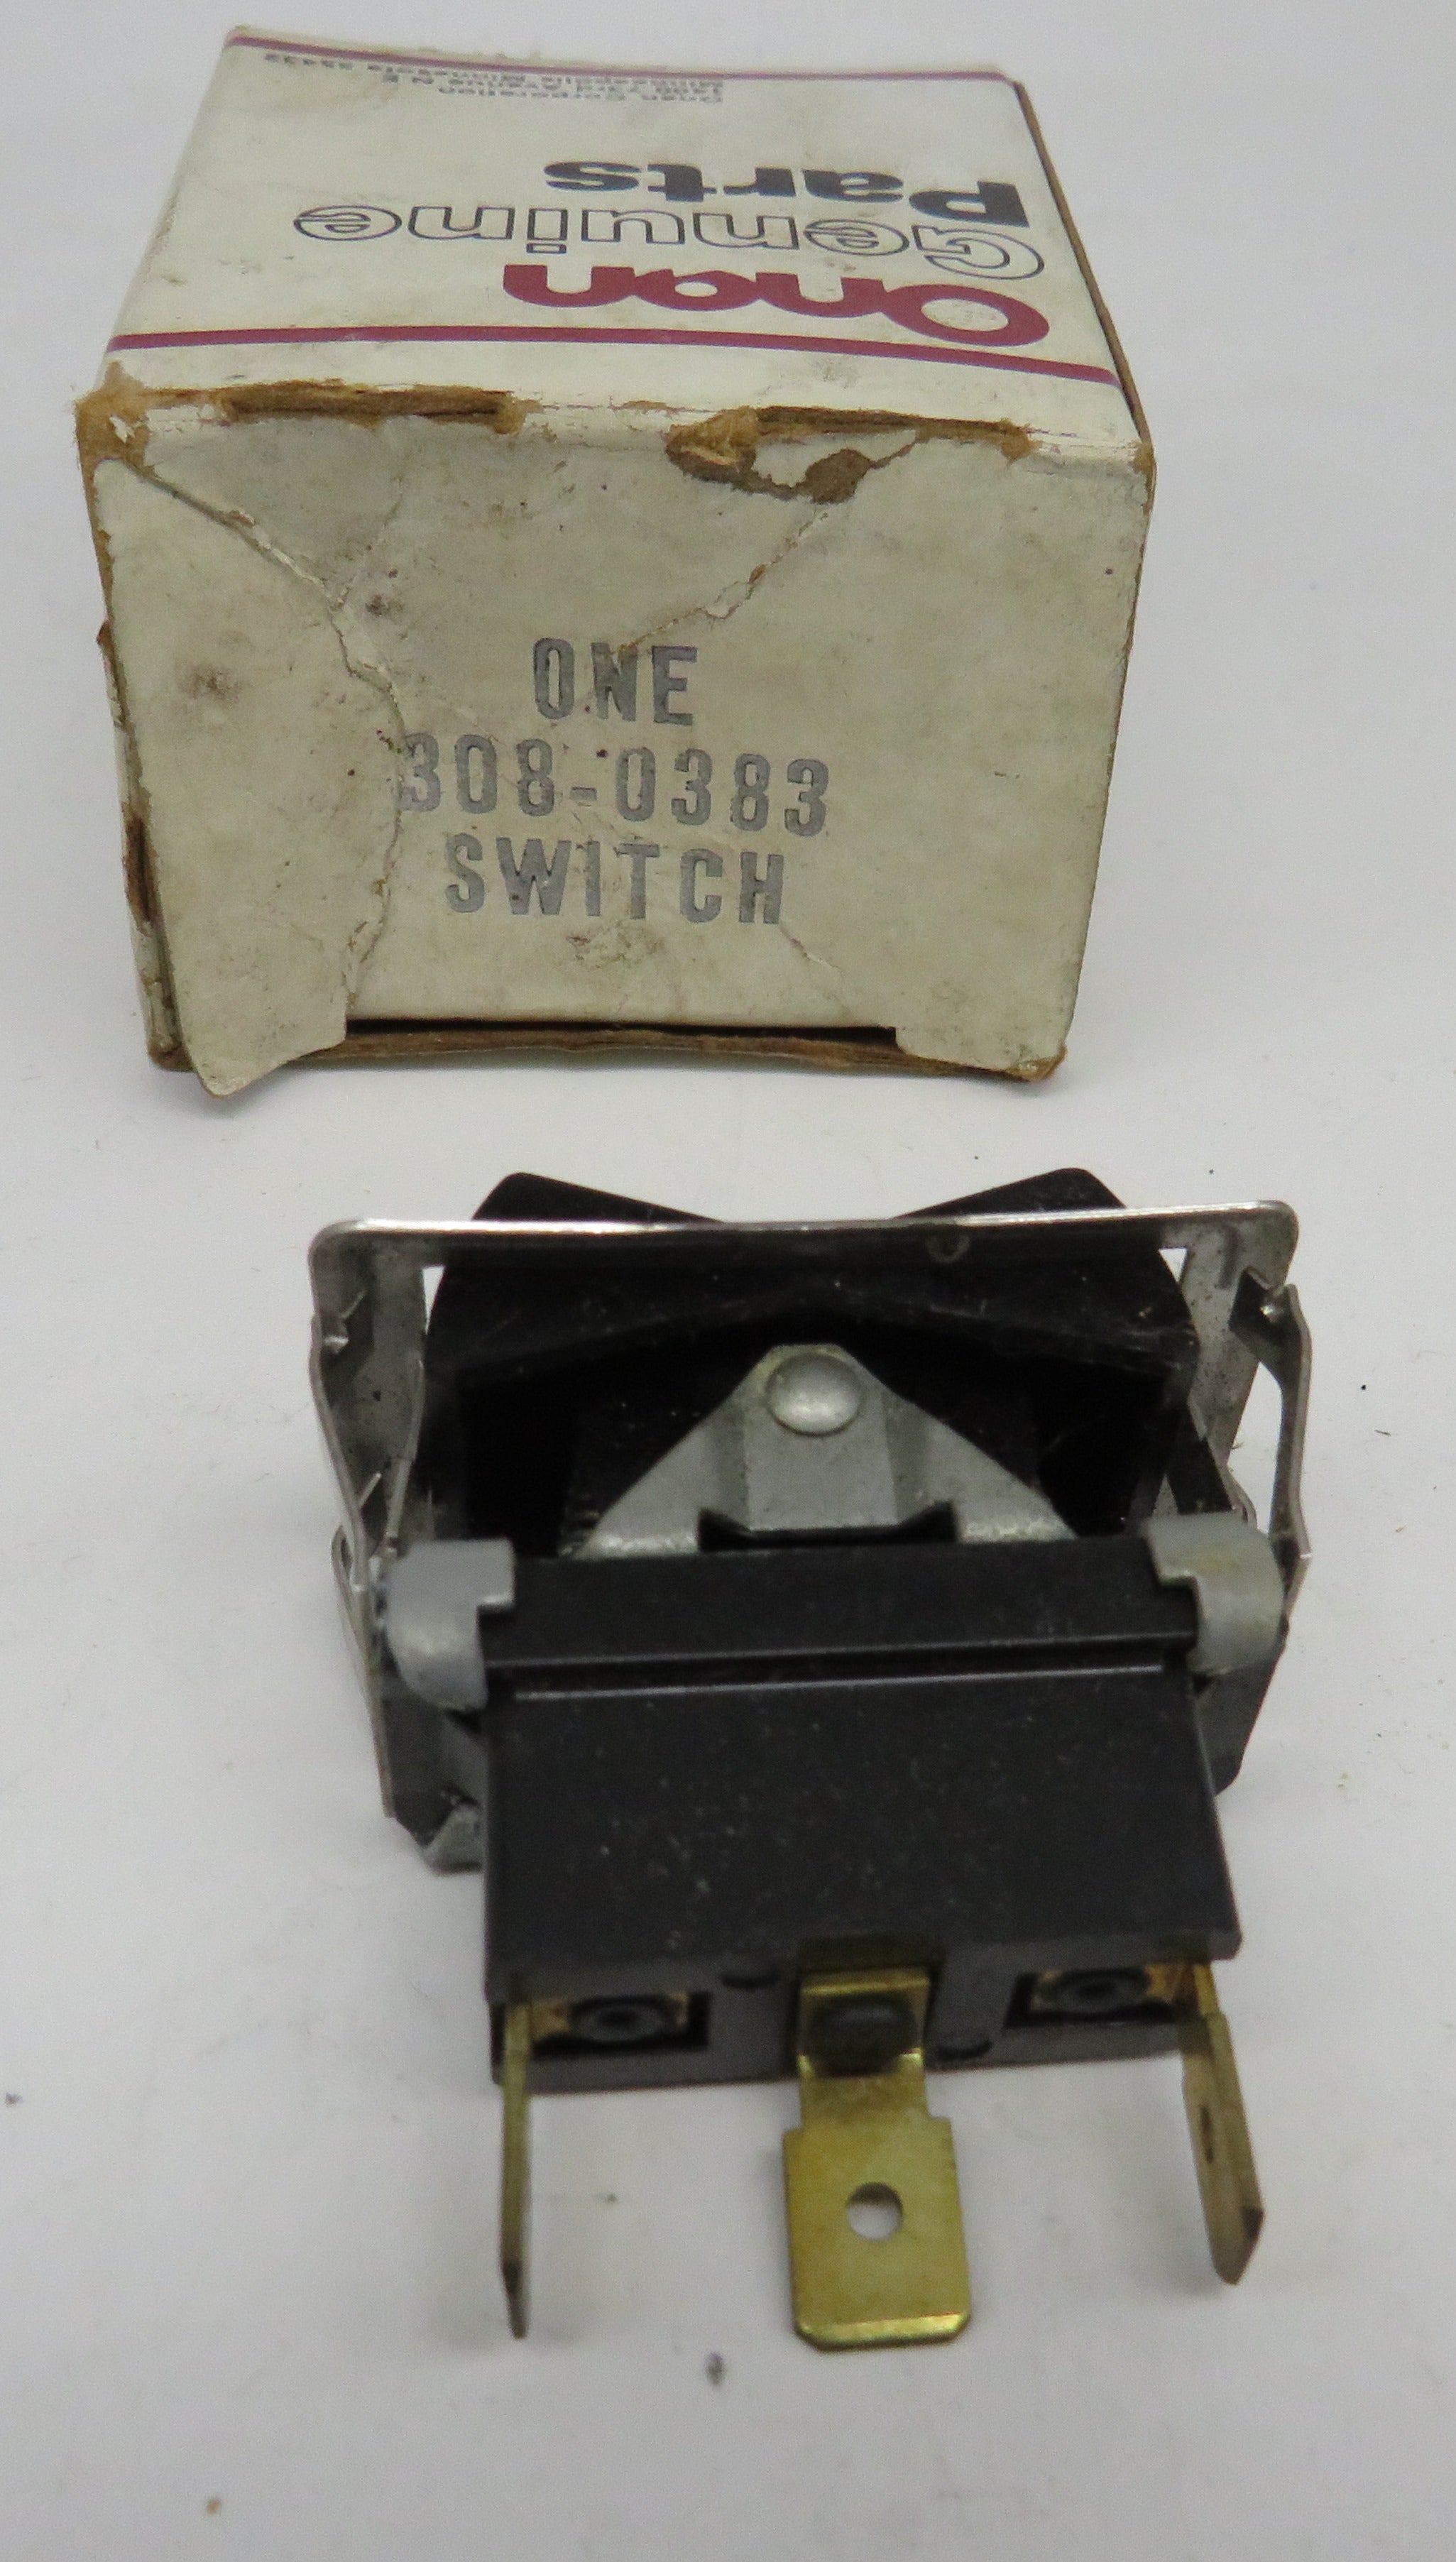 308-0383 Onan Standard Rocker Switch 